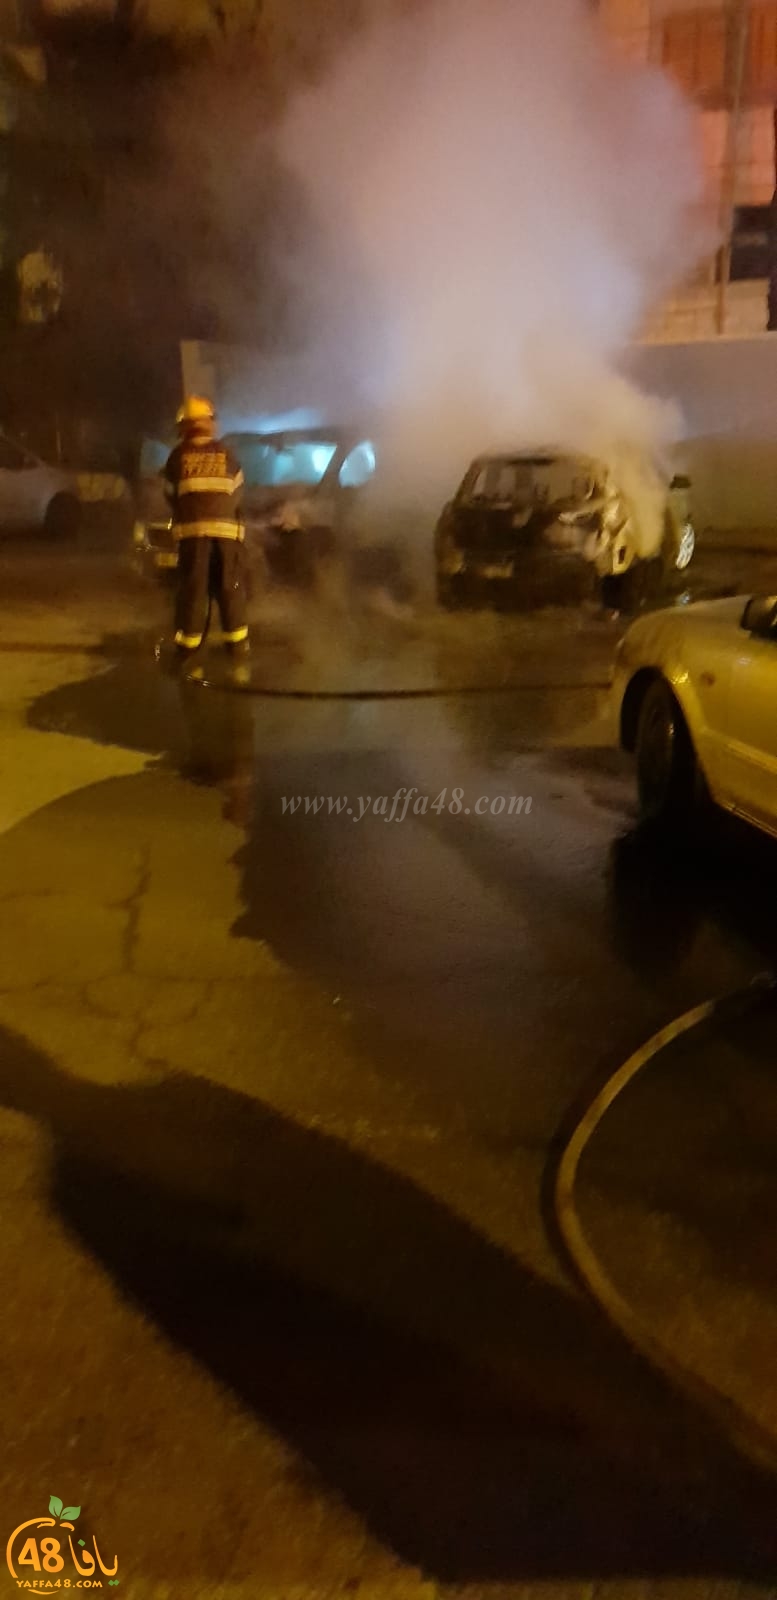  فجر اليوم: حريق بسيارة في حي الجواريش بالرملة 